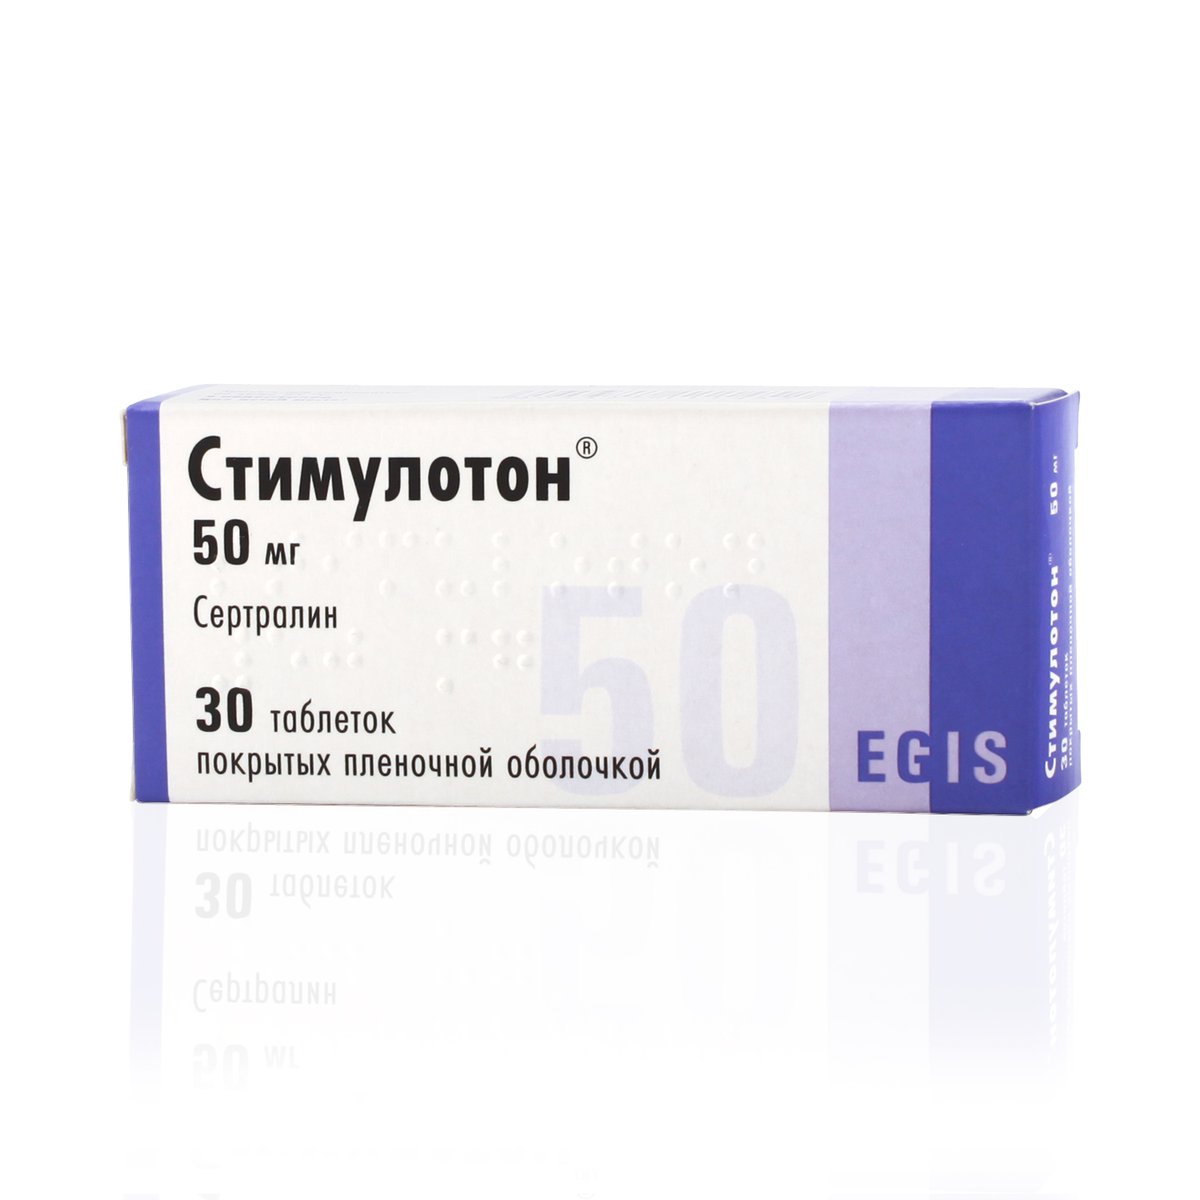 Стимулотон (таблетки, 30 шт, 50 мг) - цена,  онлайн  .